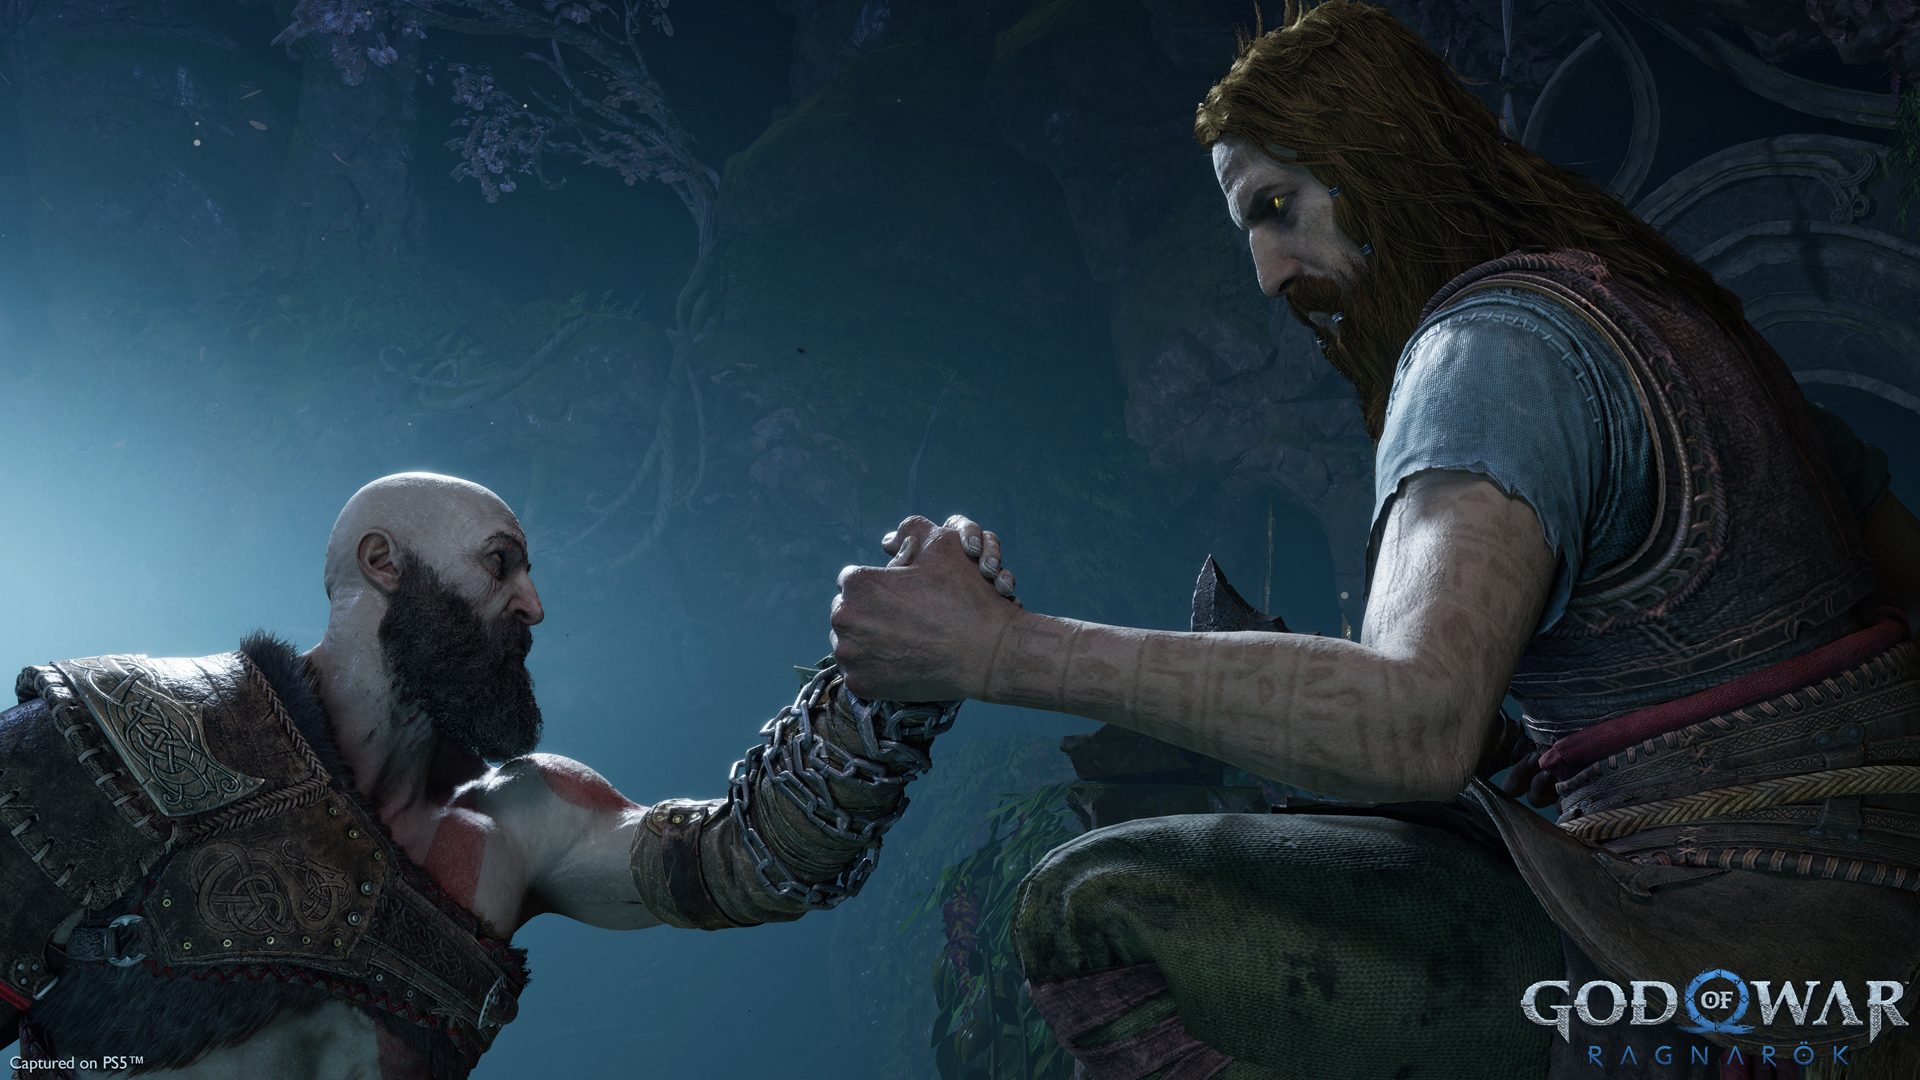 The God of War Ragnarök Story Trailer is now live – PlayStation.Blog